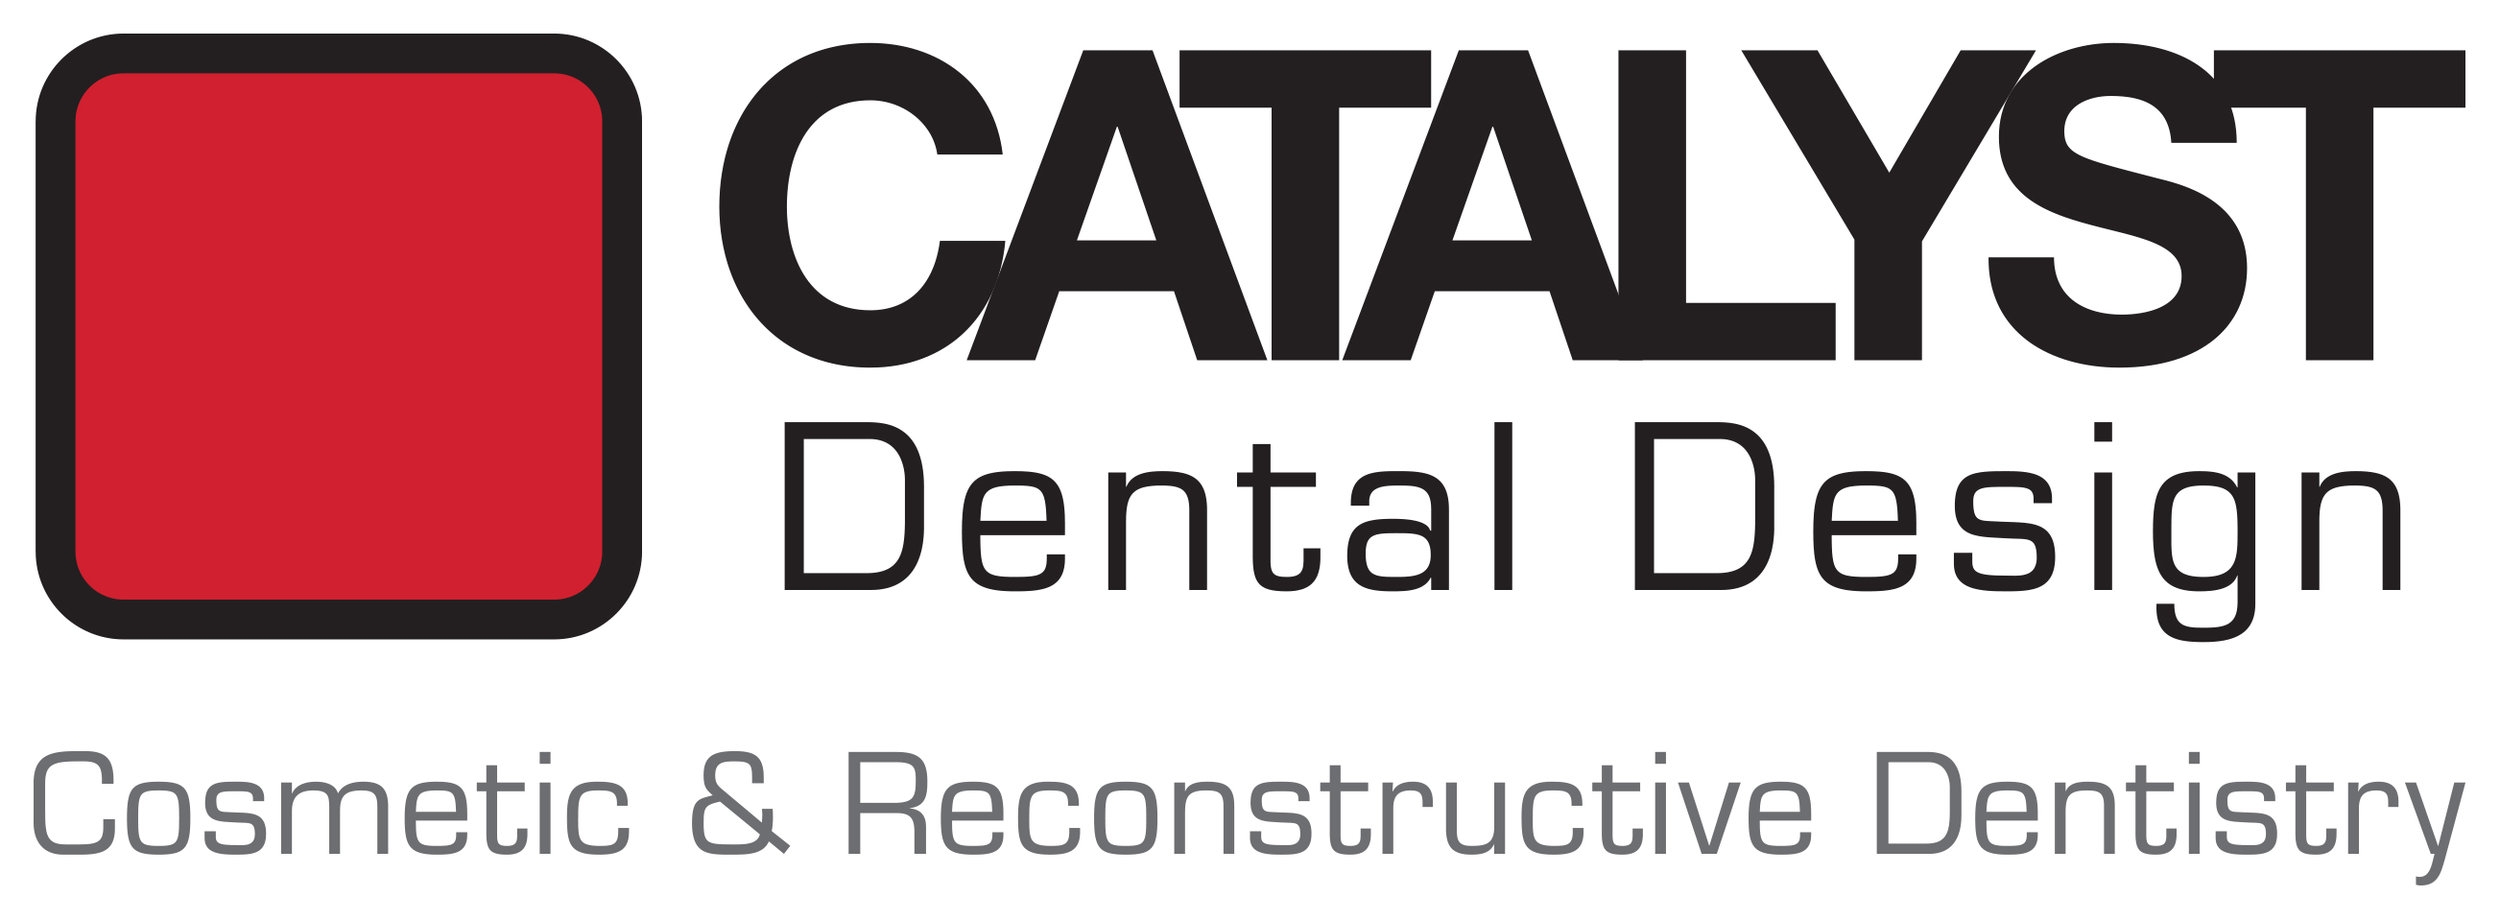 Catalyst Dental Design